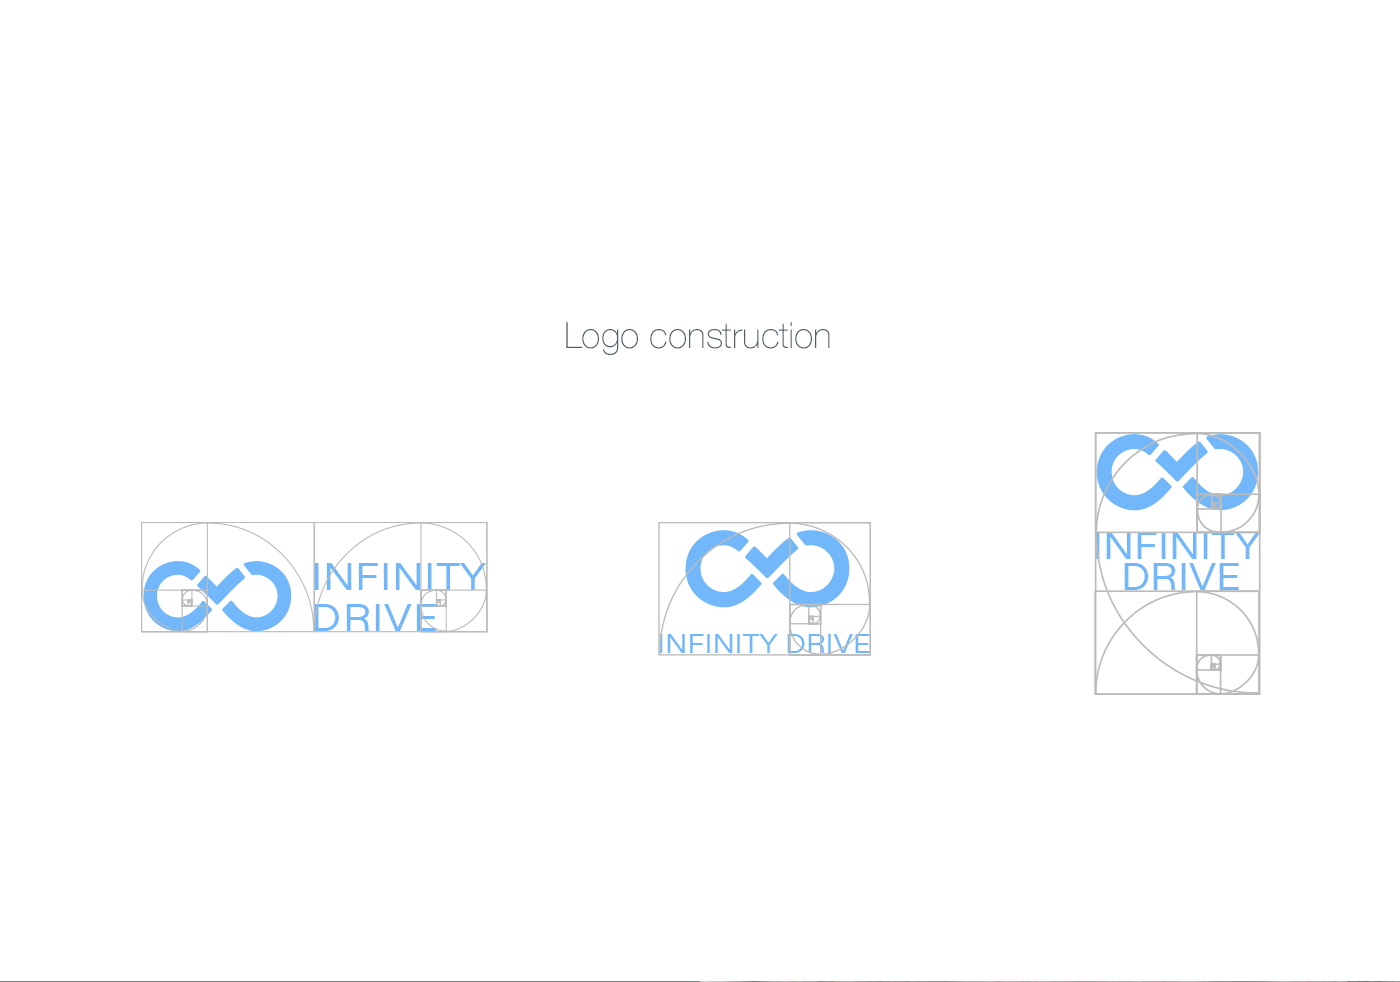 Identity Logo - Brand Identity Design for Startups